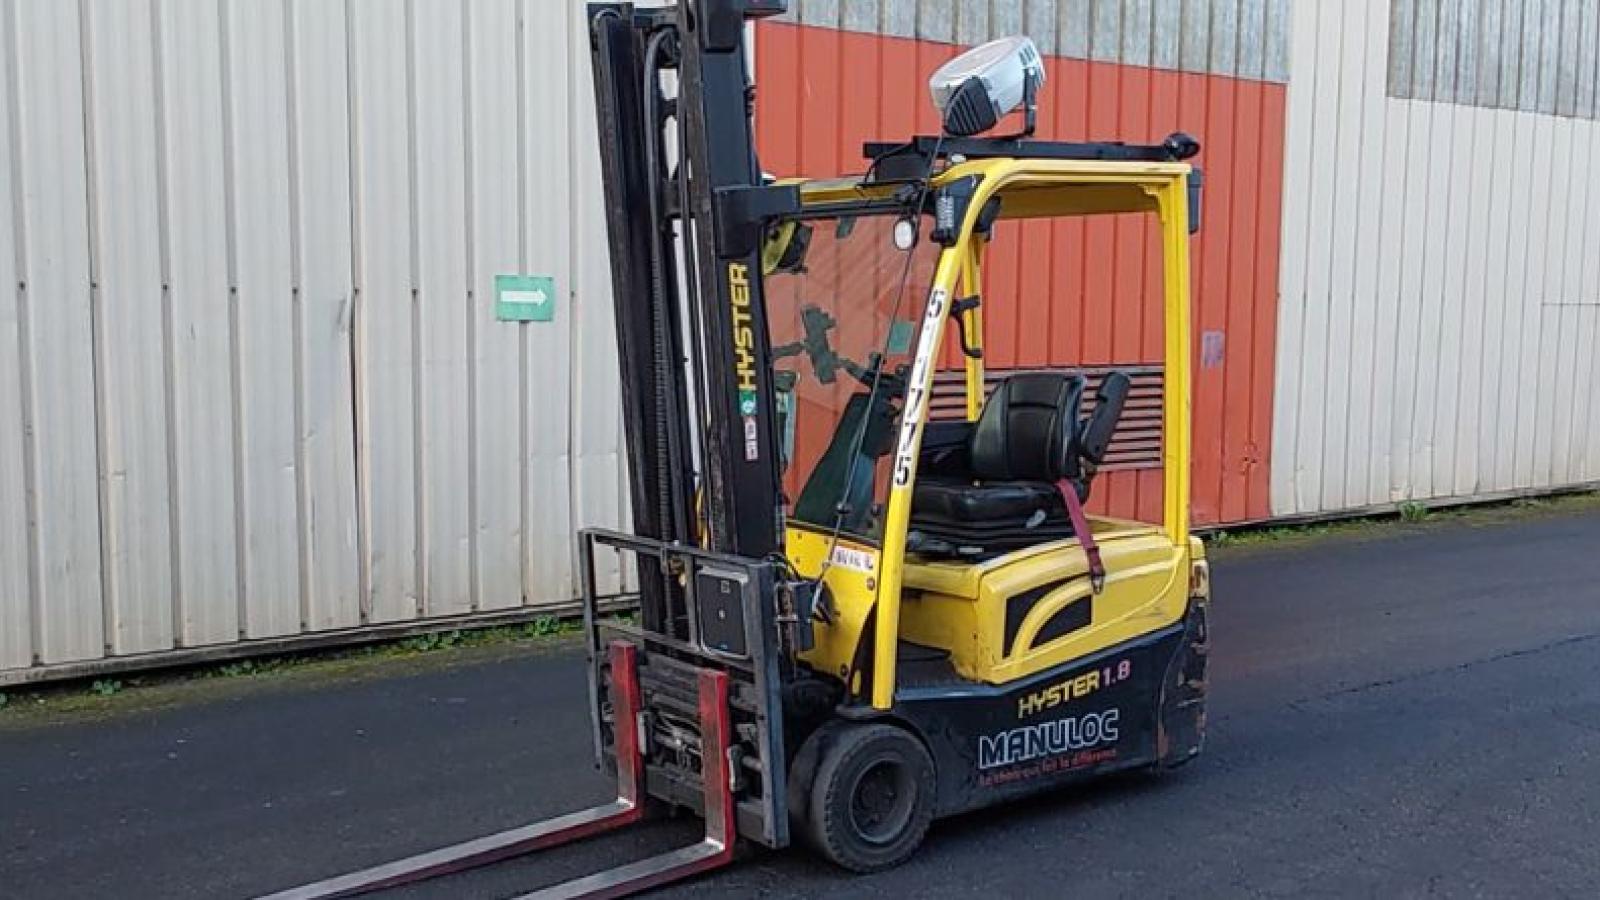 Forklift using LiftTrak technology